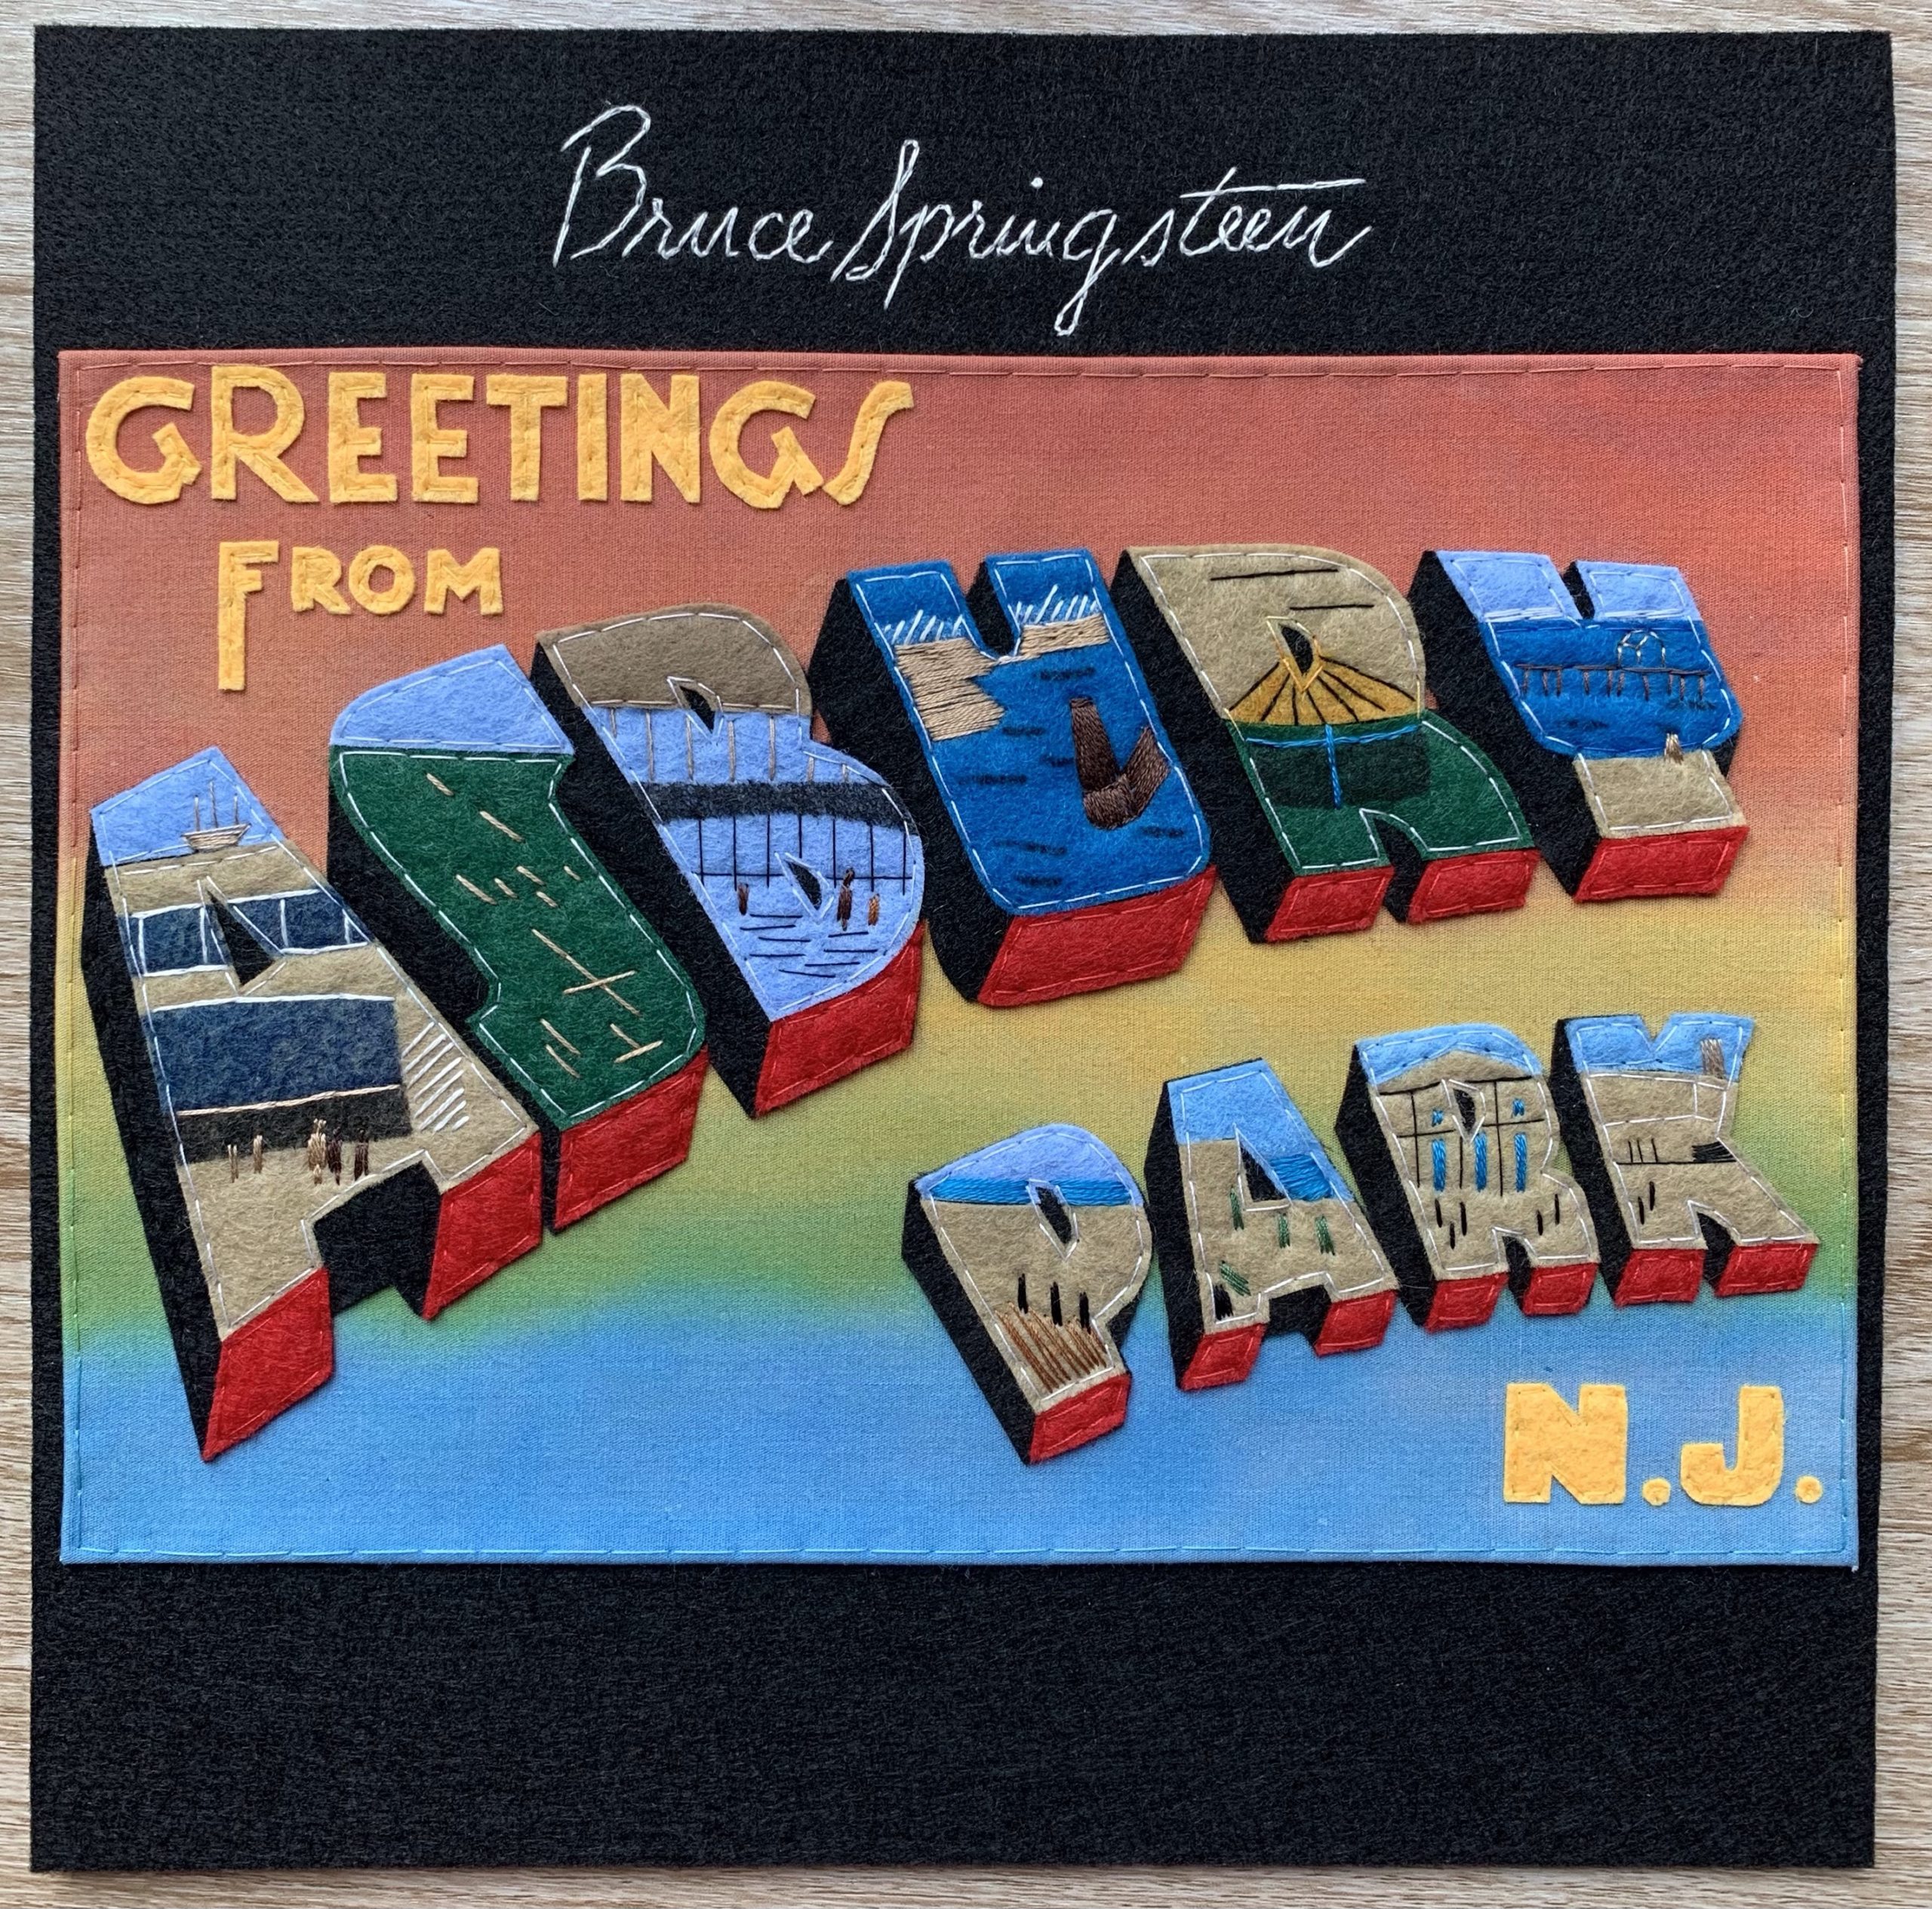 Bruce Springsteen – Greetings From Asbury Park, N.J. (1973)